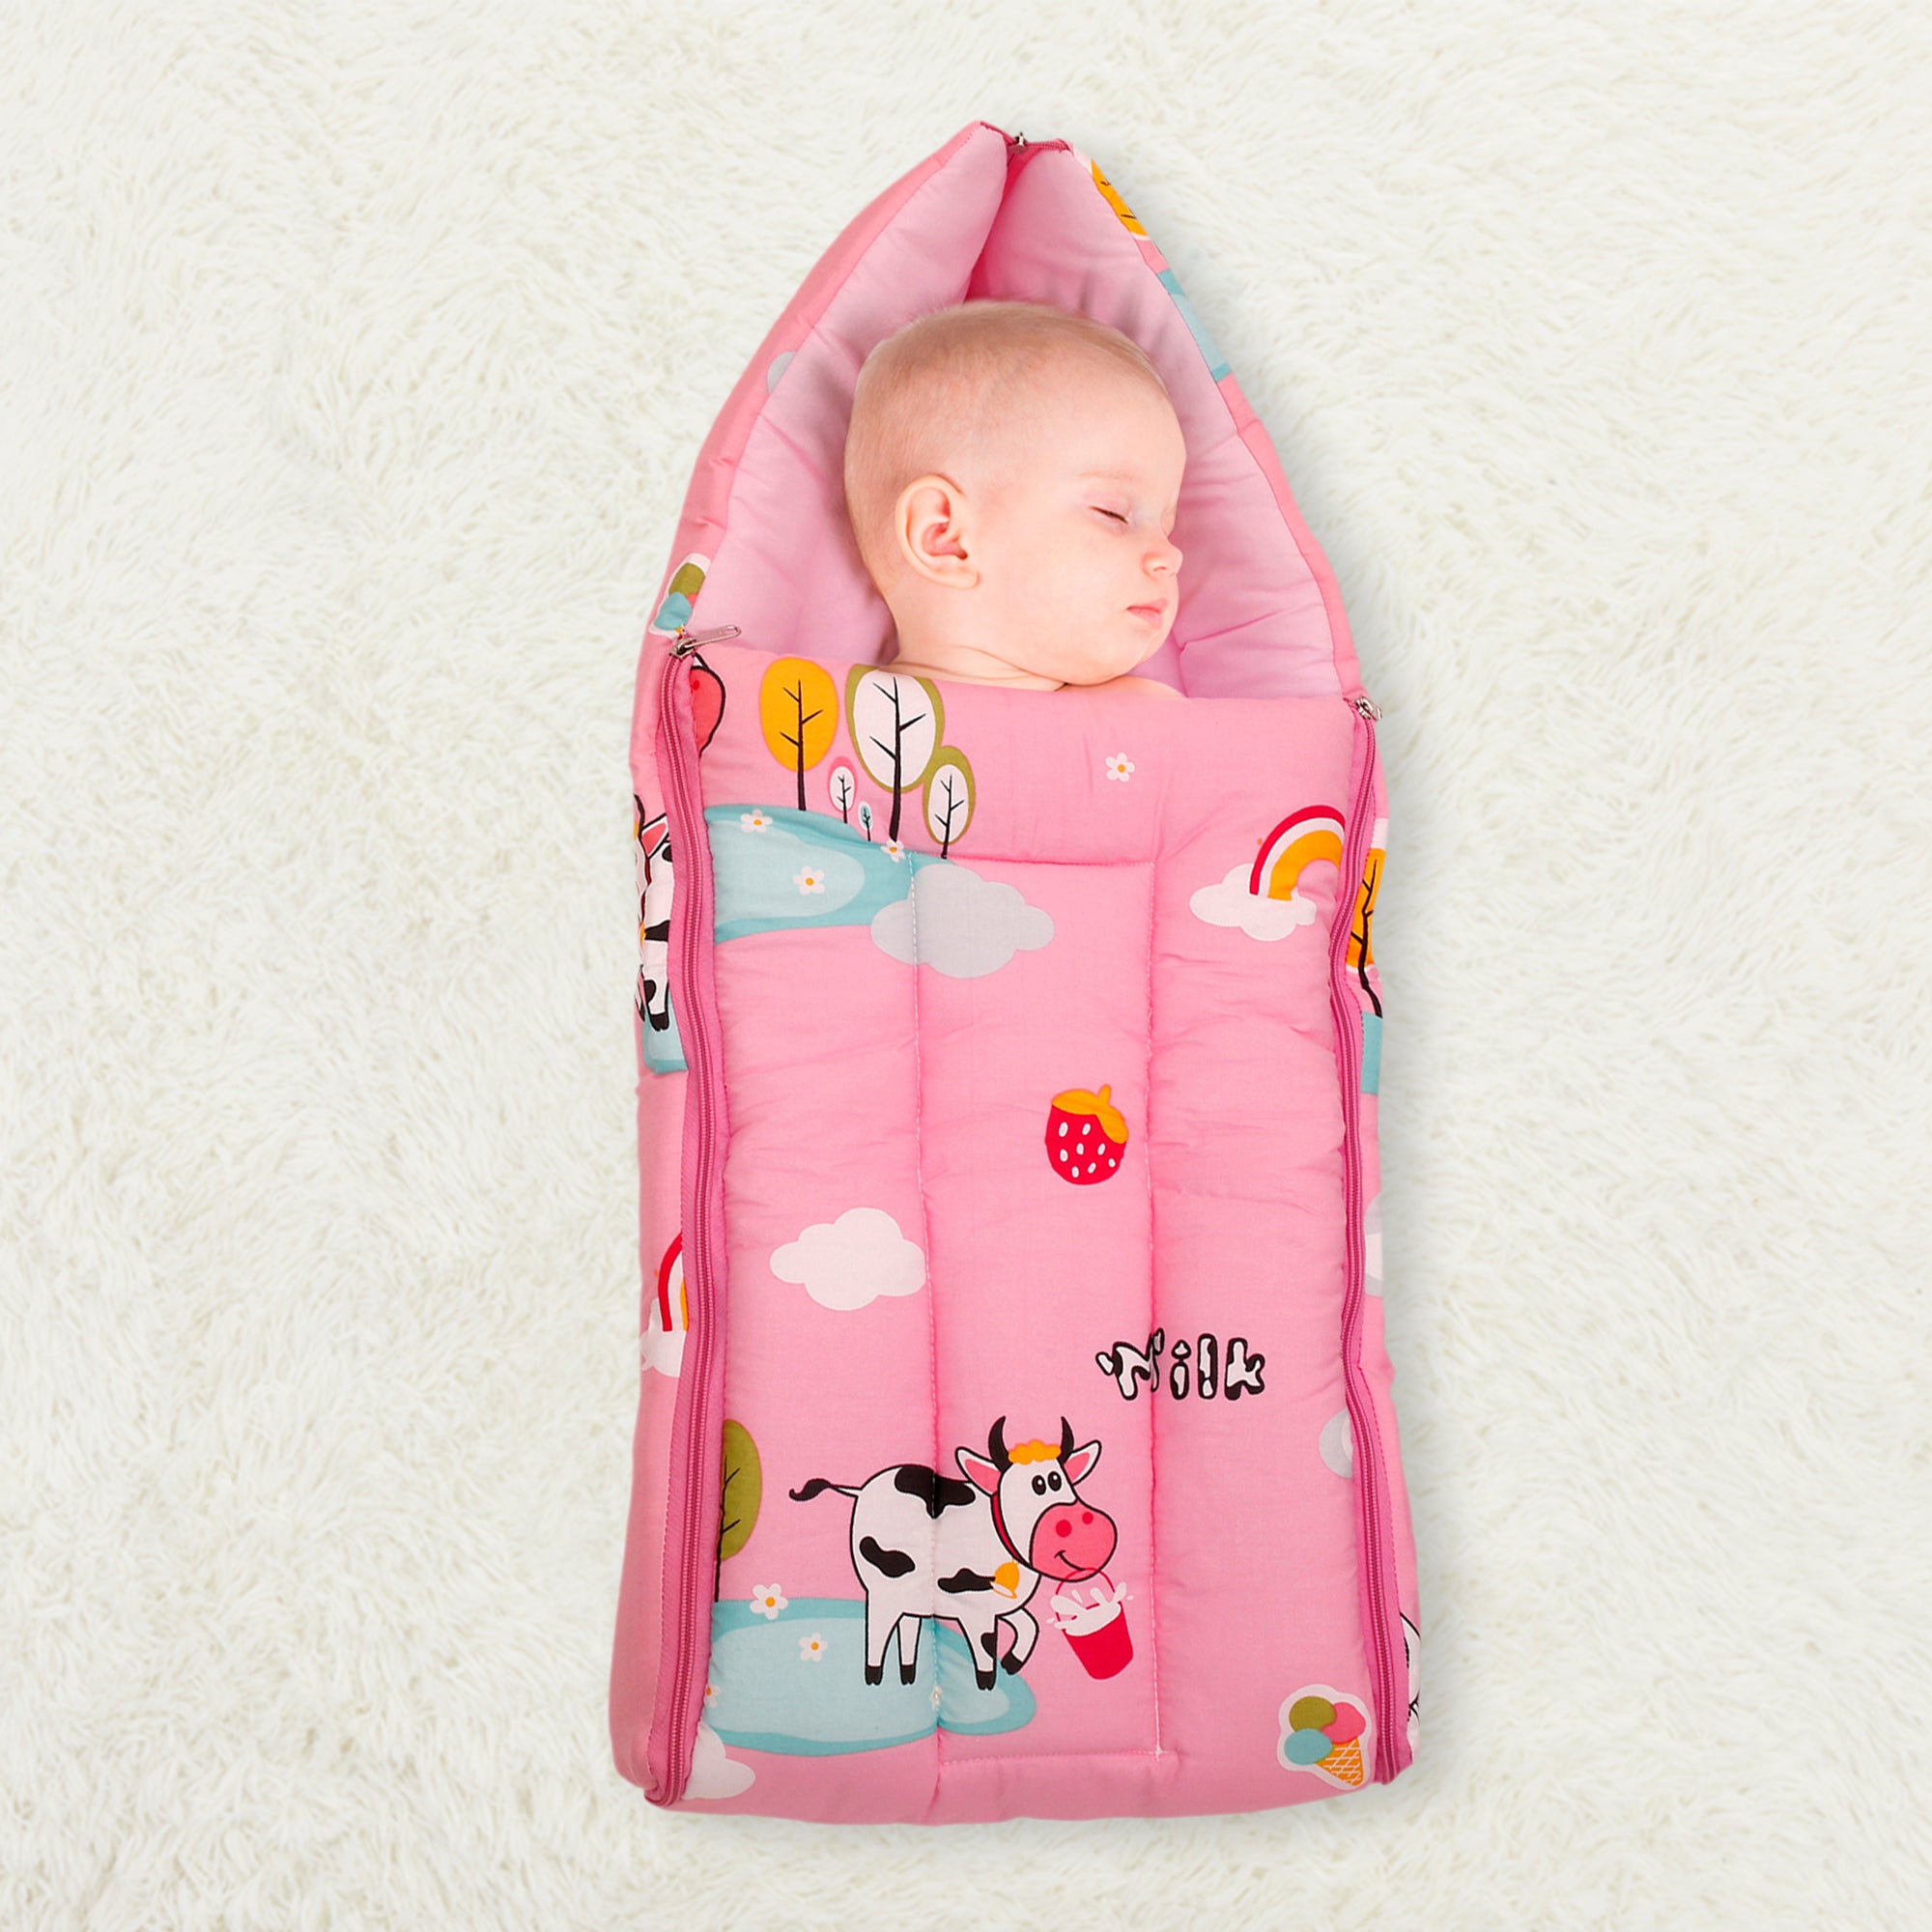 Sleeping Bag Milkaholic Peach - Baby Moo